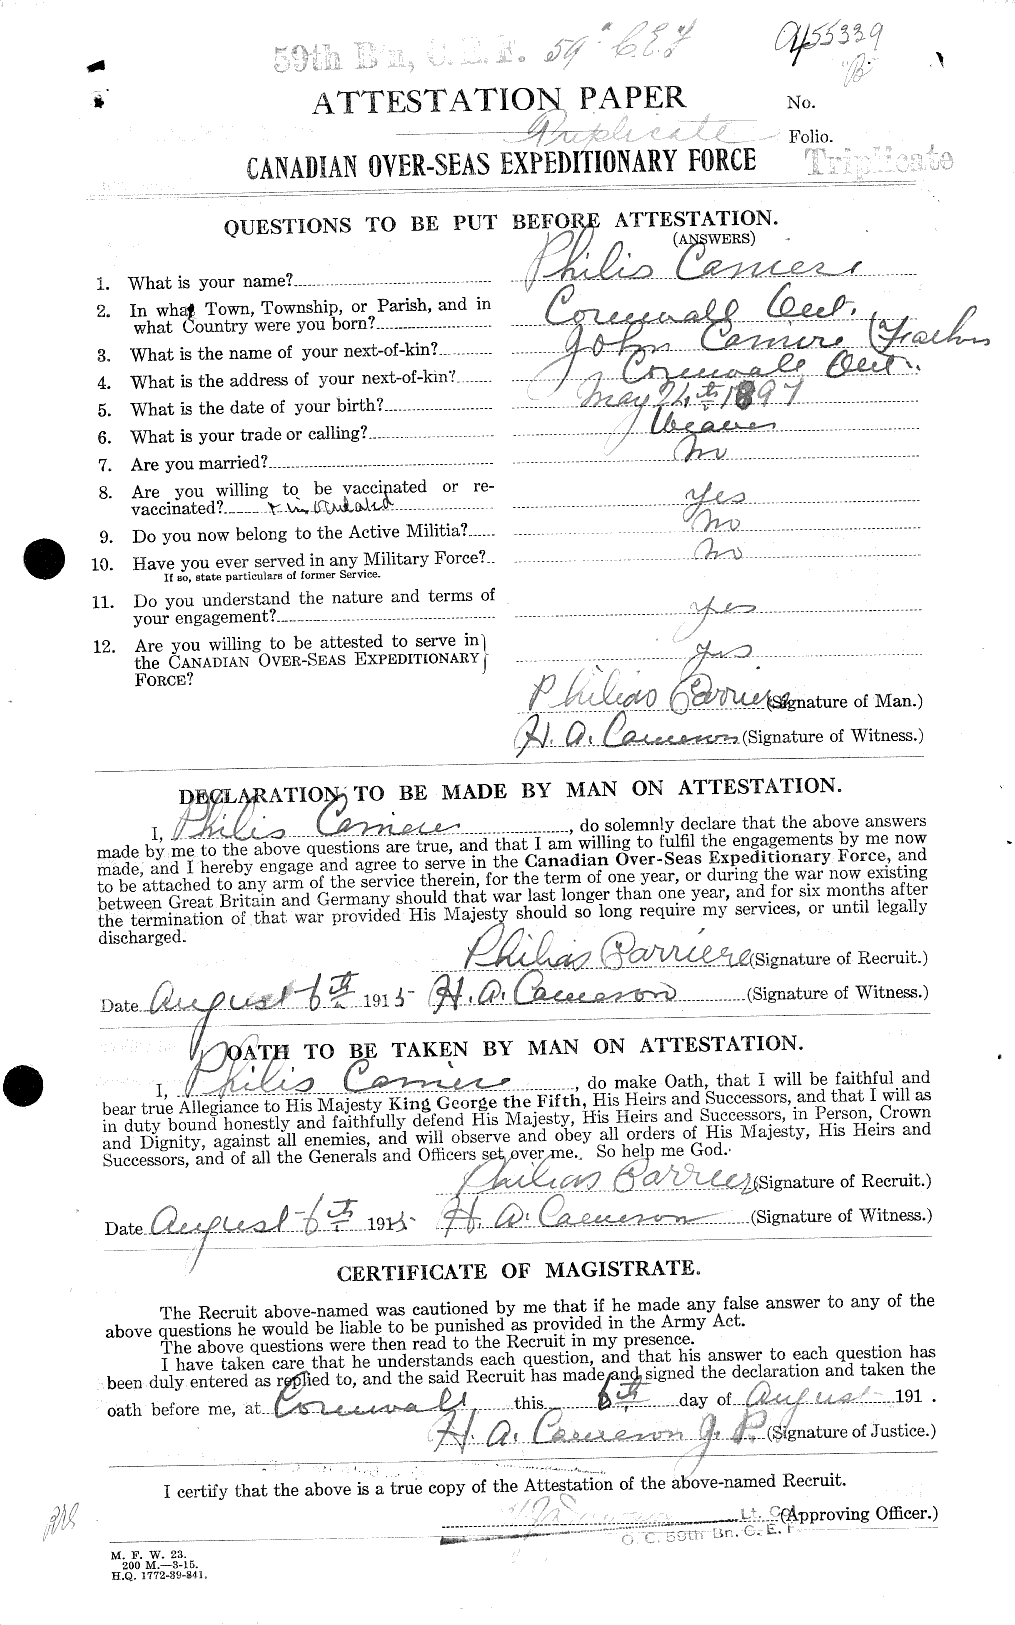 Dossiers du Personnel de la Première Guerre mondiale - CEC 005427a